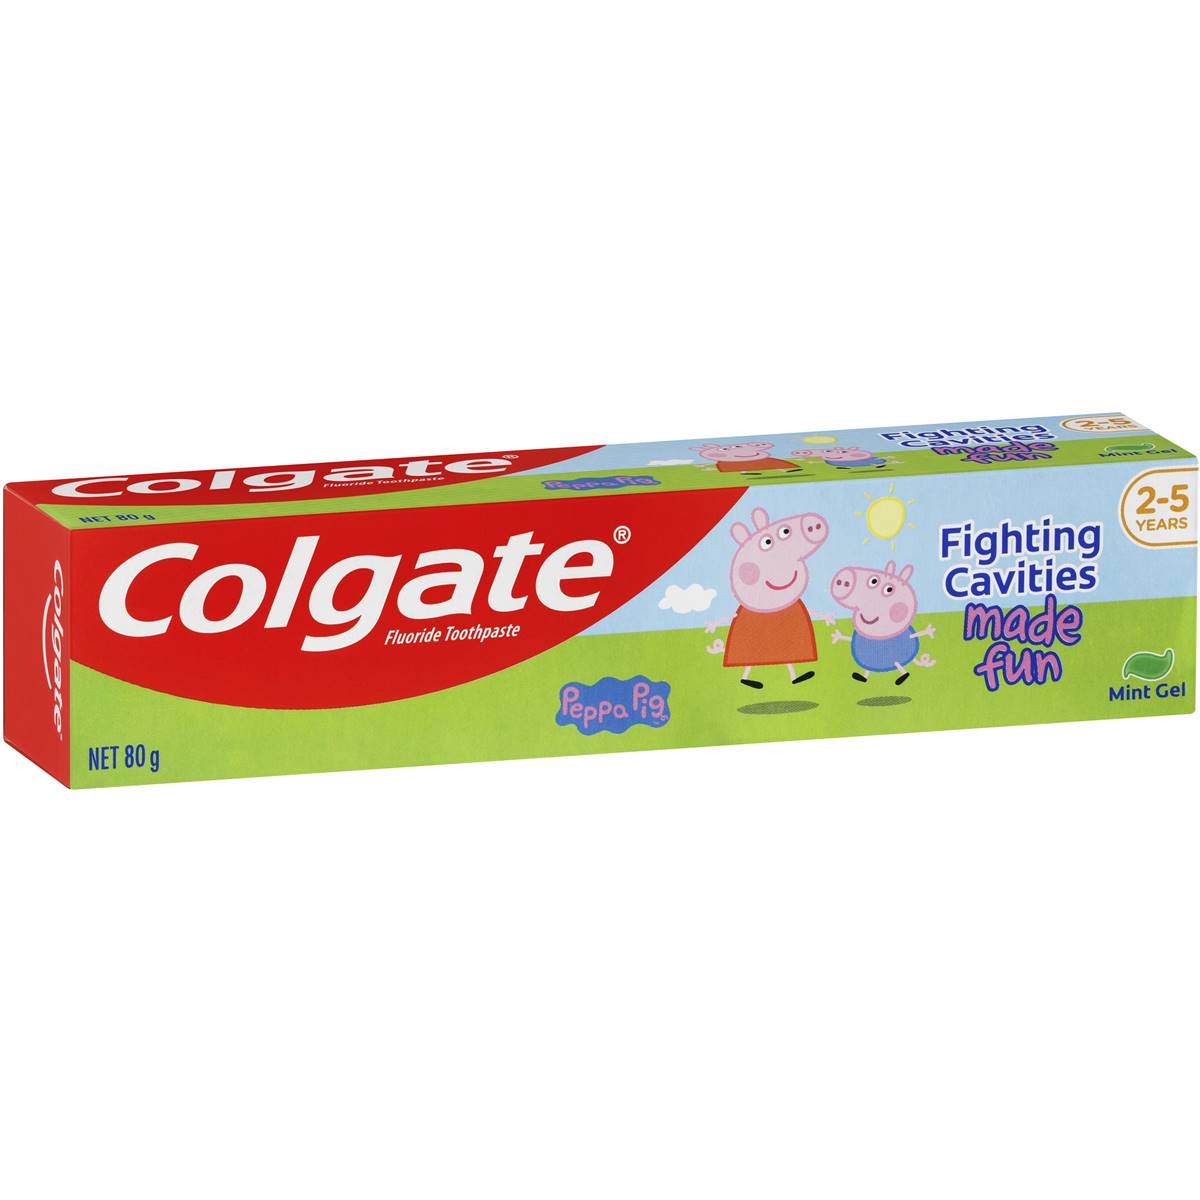 Colgate 80g Toothpaste Peppa Pig Mint Gel 2-5yrs